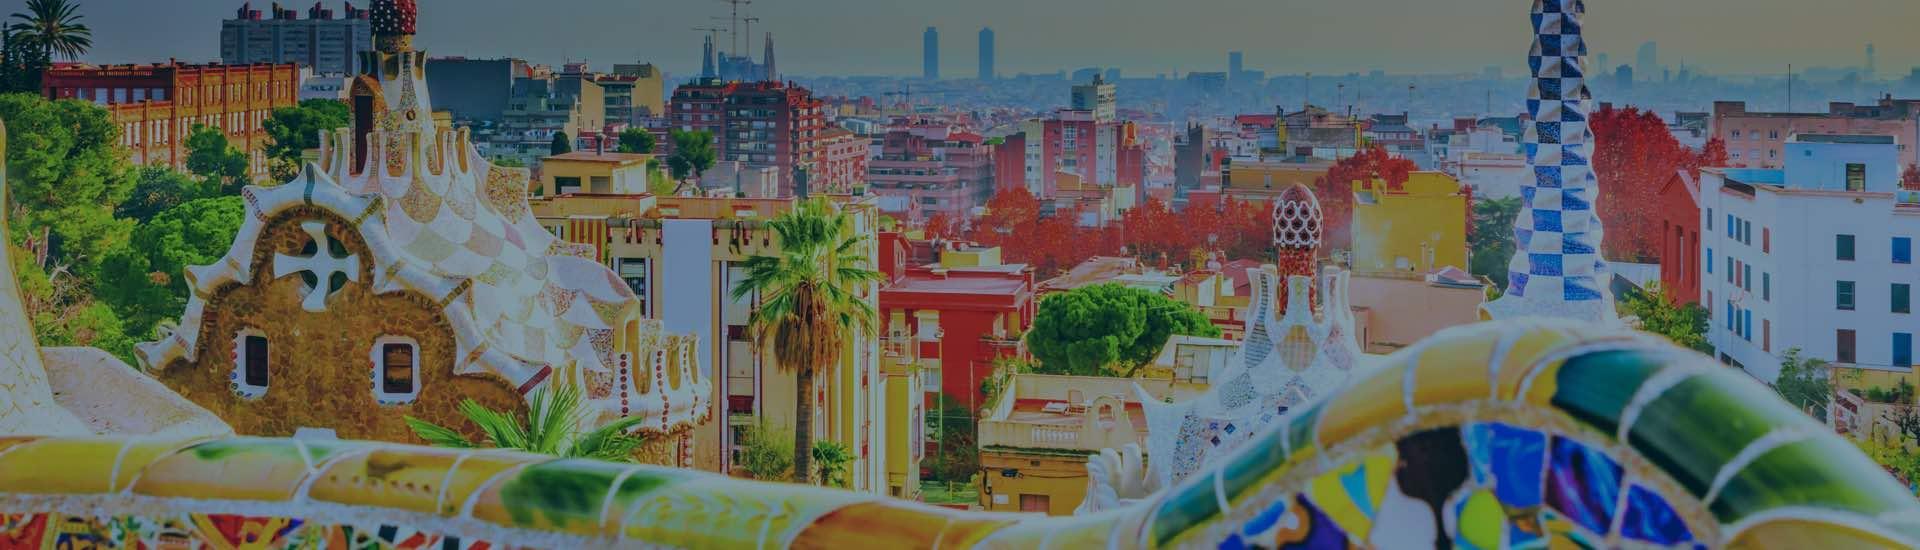 ابحث عن أفضل الفنادق في برشلونة